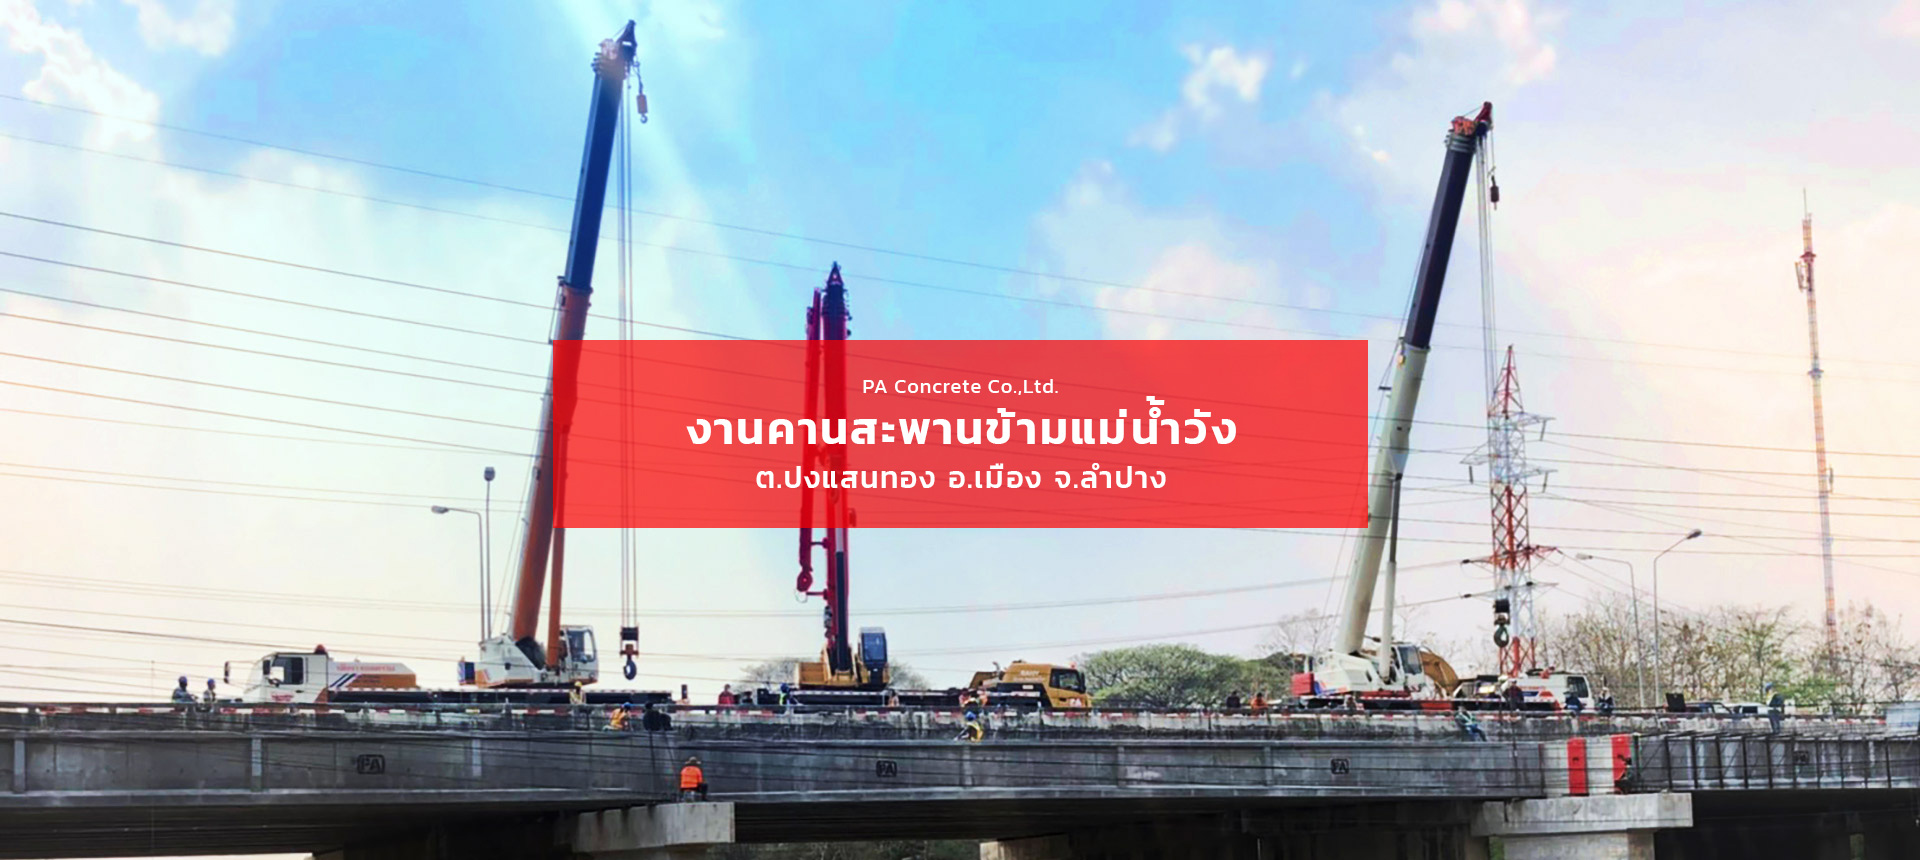 bridge-wang-river-our-work-PA-concrete